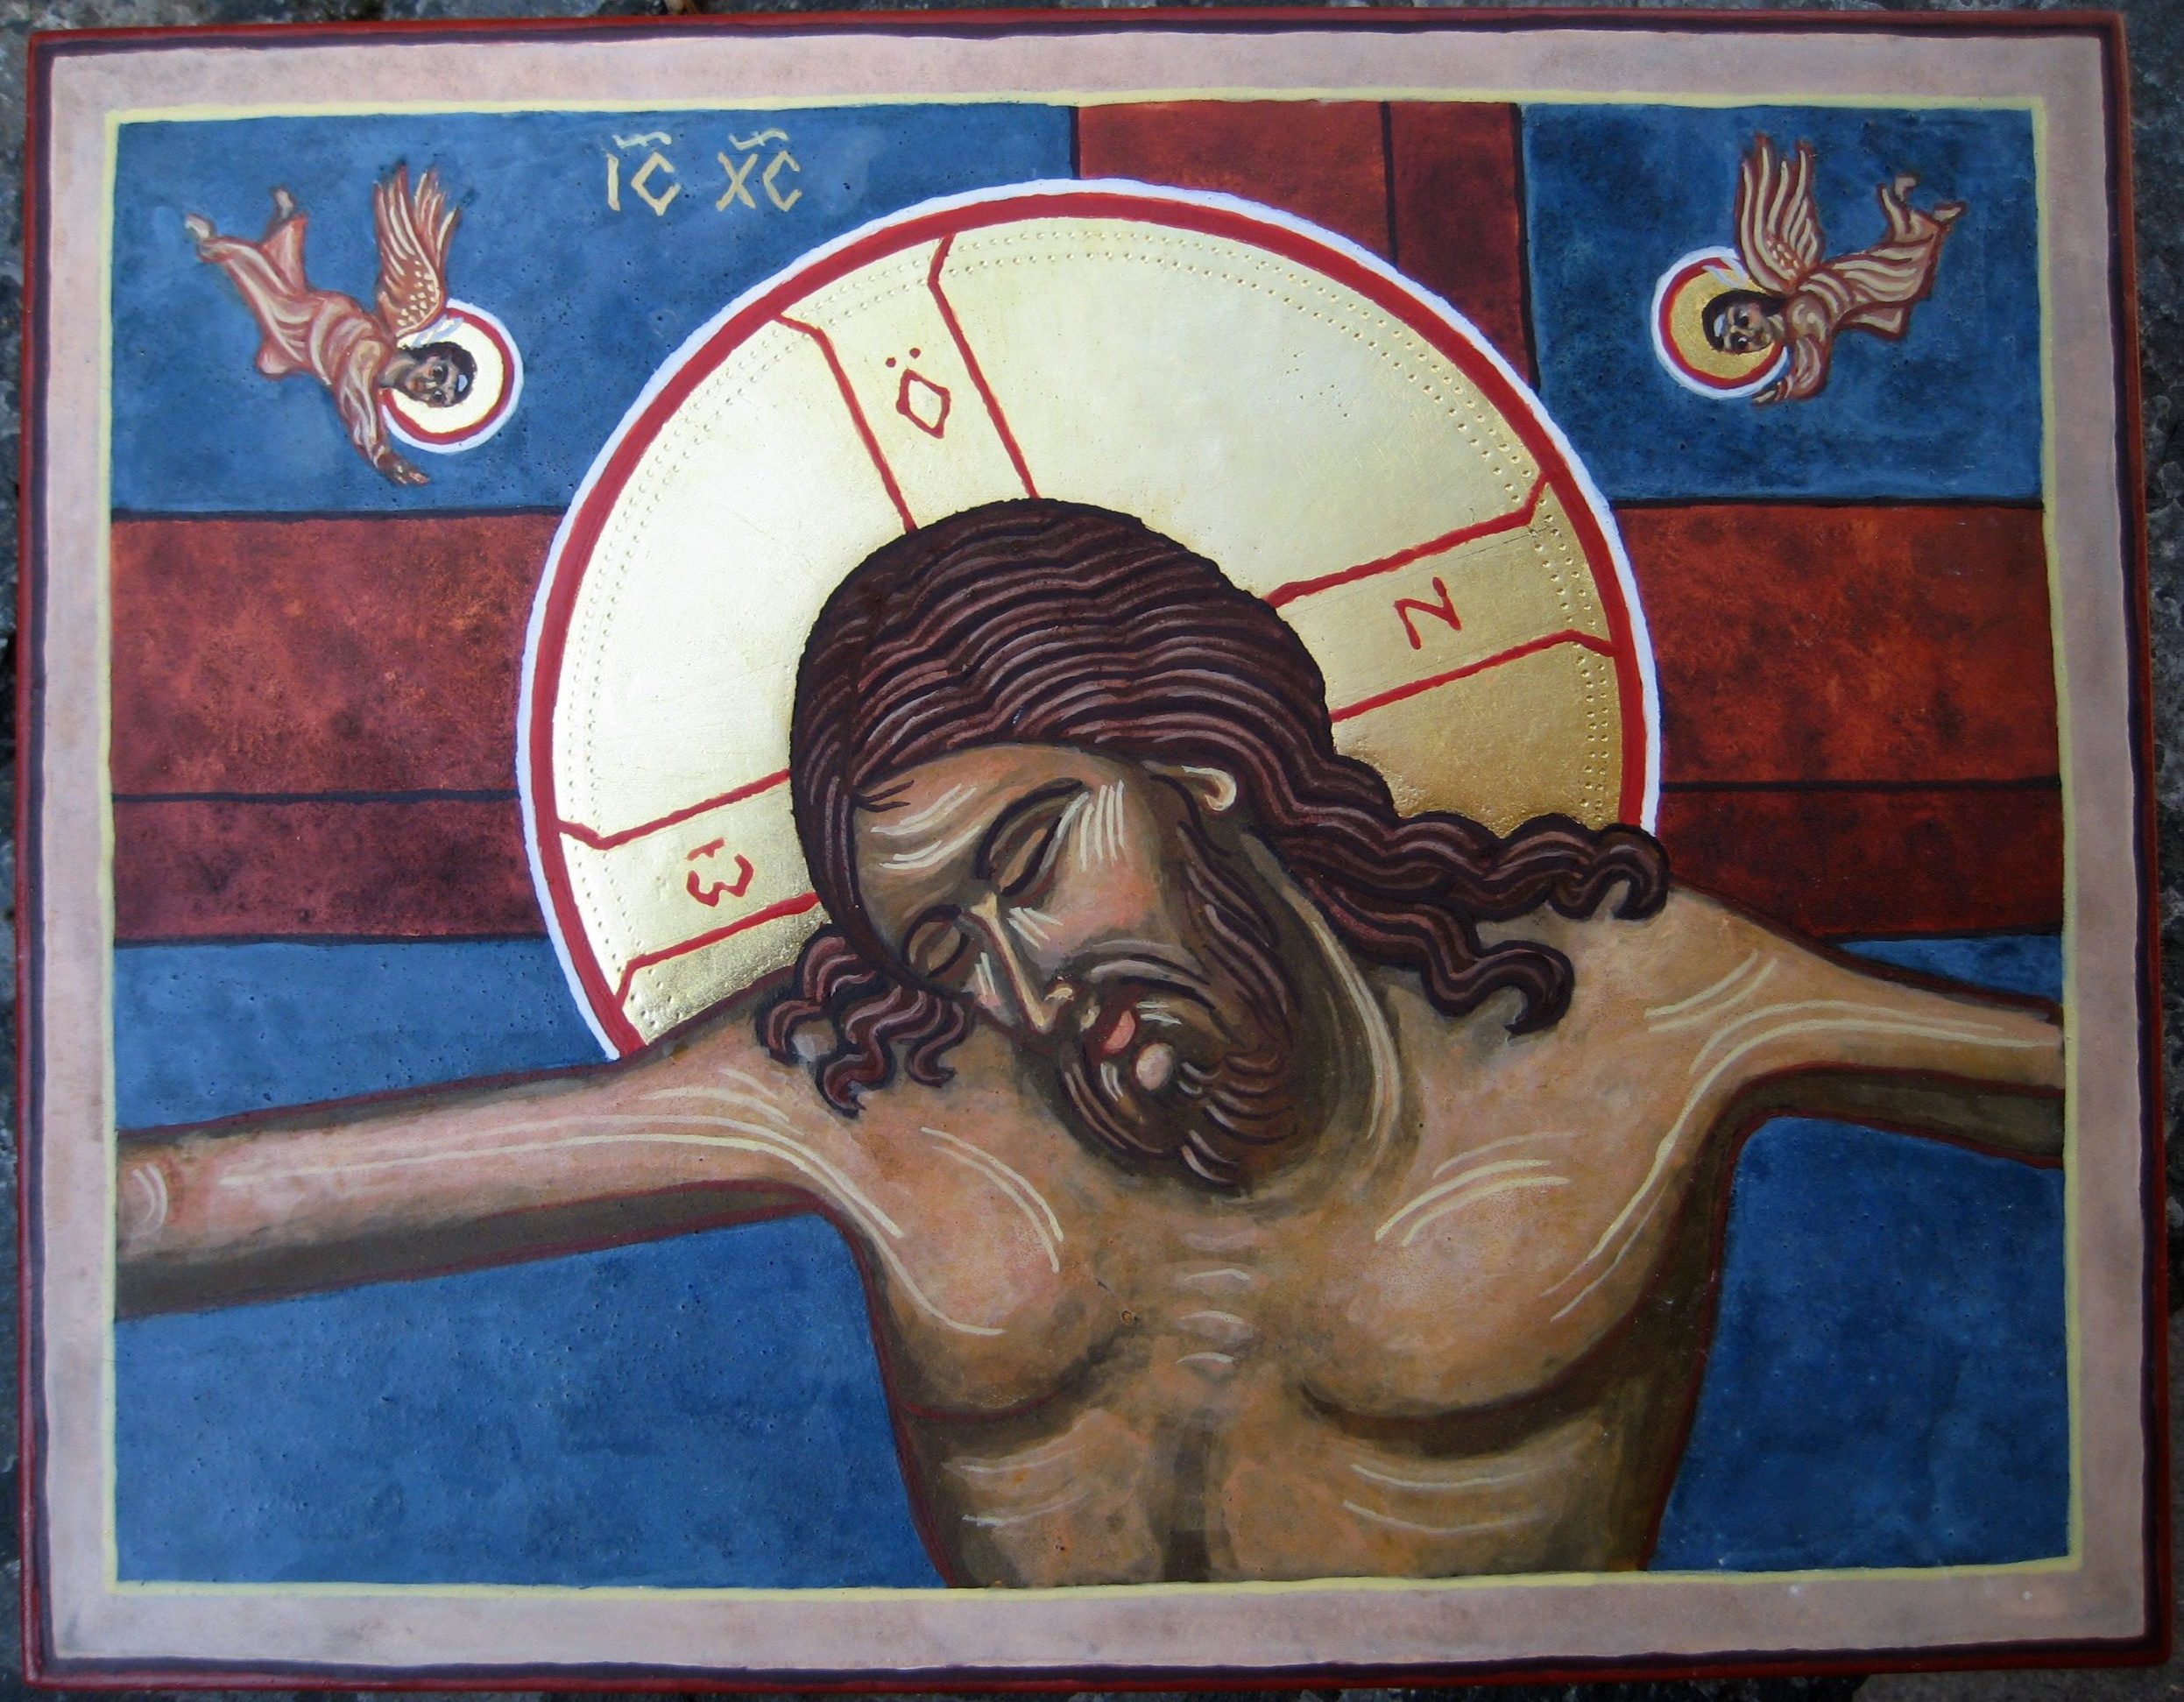 Икона распятого Иисуса Христа. Распятие Иисуса Христа на кресте икона. Икона Иисуса Христа распятого на кресте. Вокруг головы святого